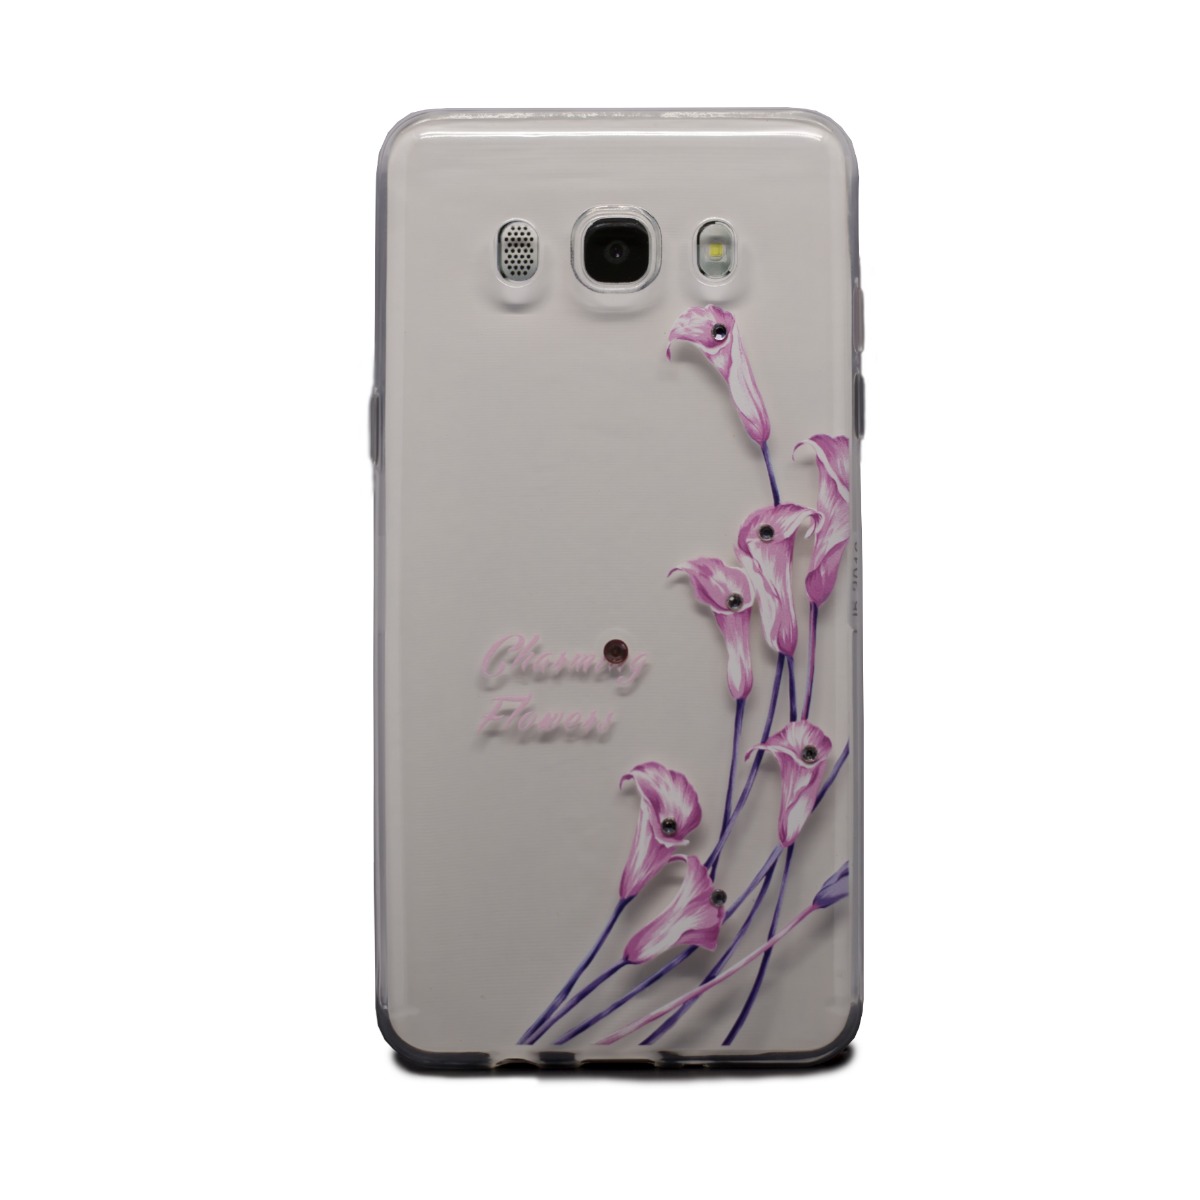 Carcasa Fashion Samsung Galaxy J5 2016, Charming Flowers thumb